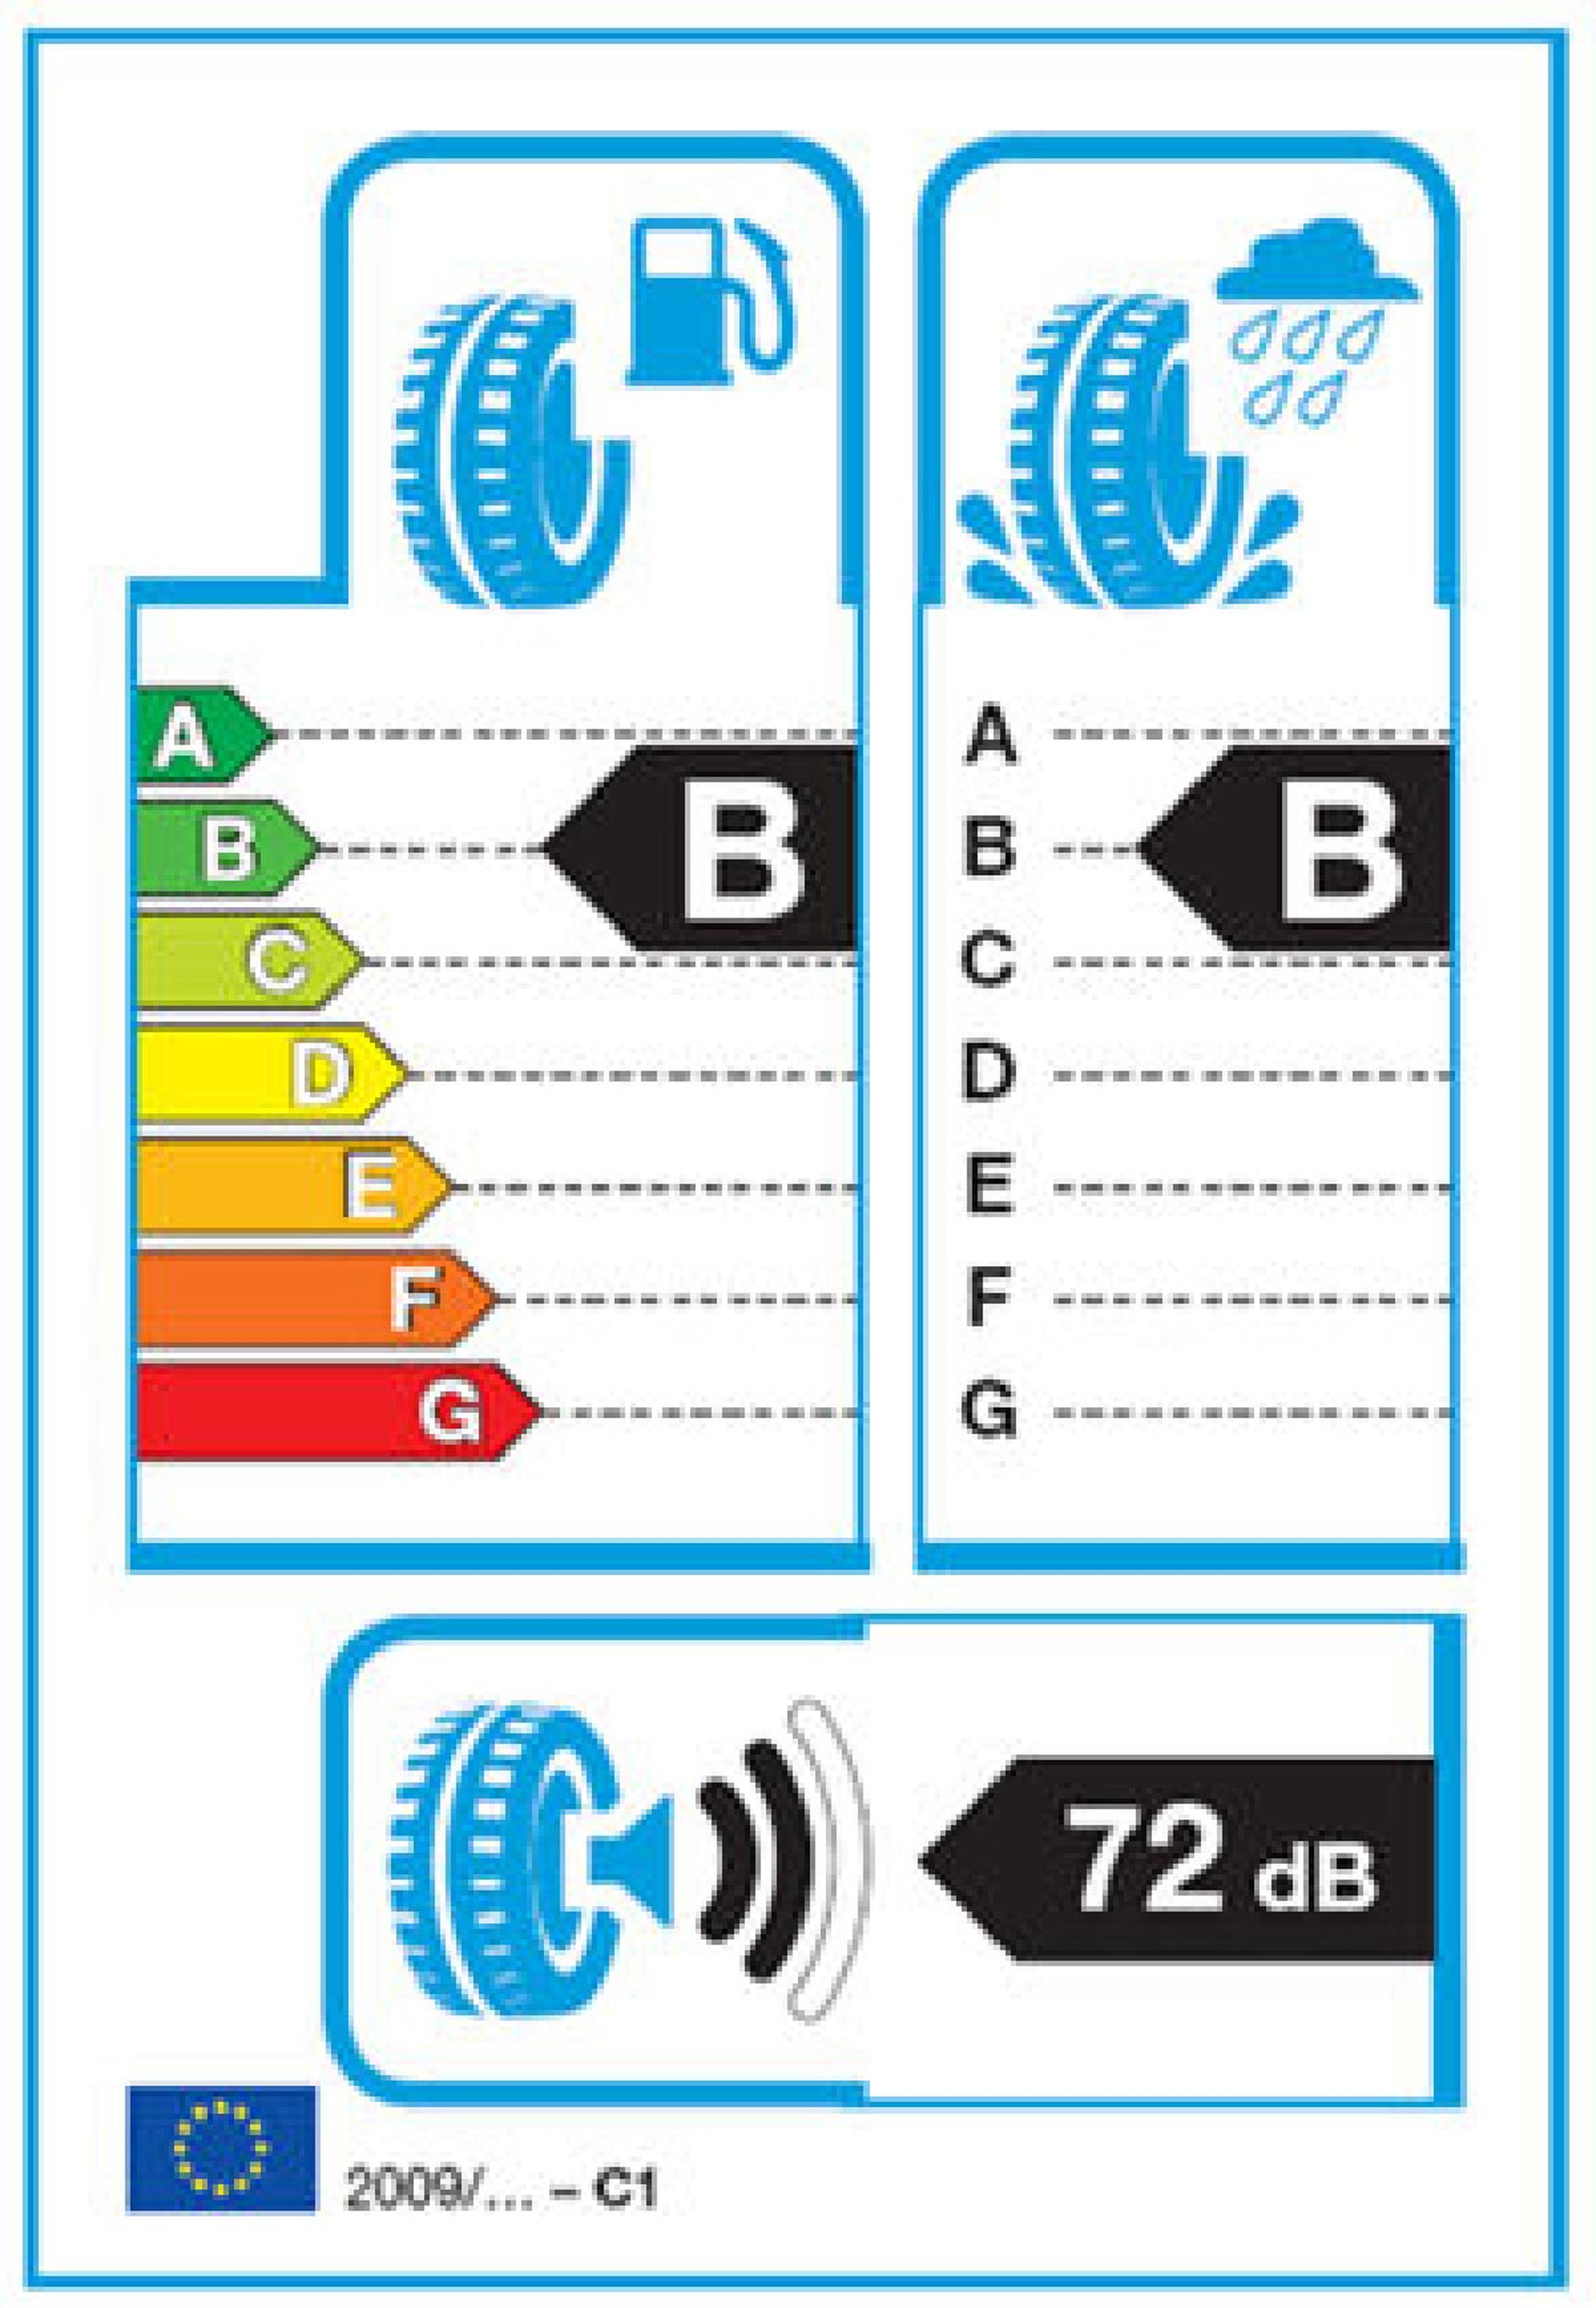 Los neumáticos más eficientes tienen una B en la columna de la izquierda, que indica el coeficiente de la rodadura.